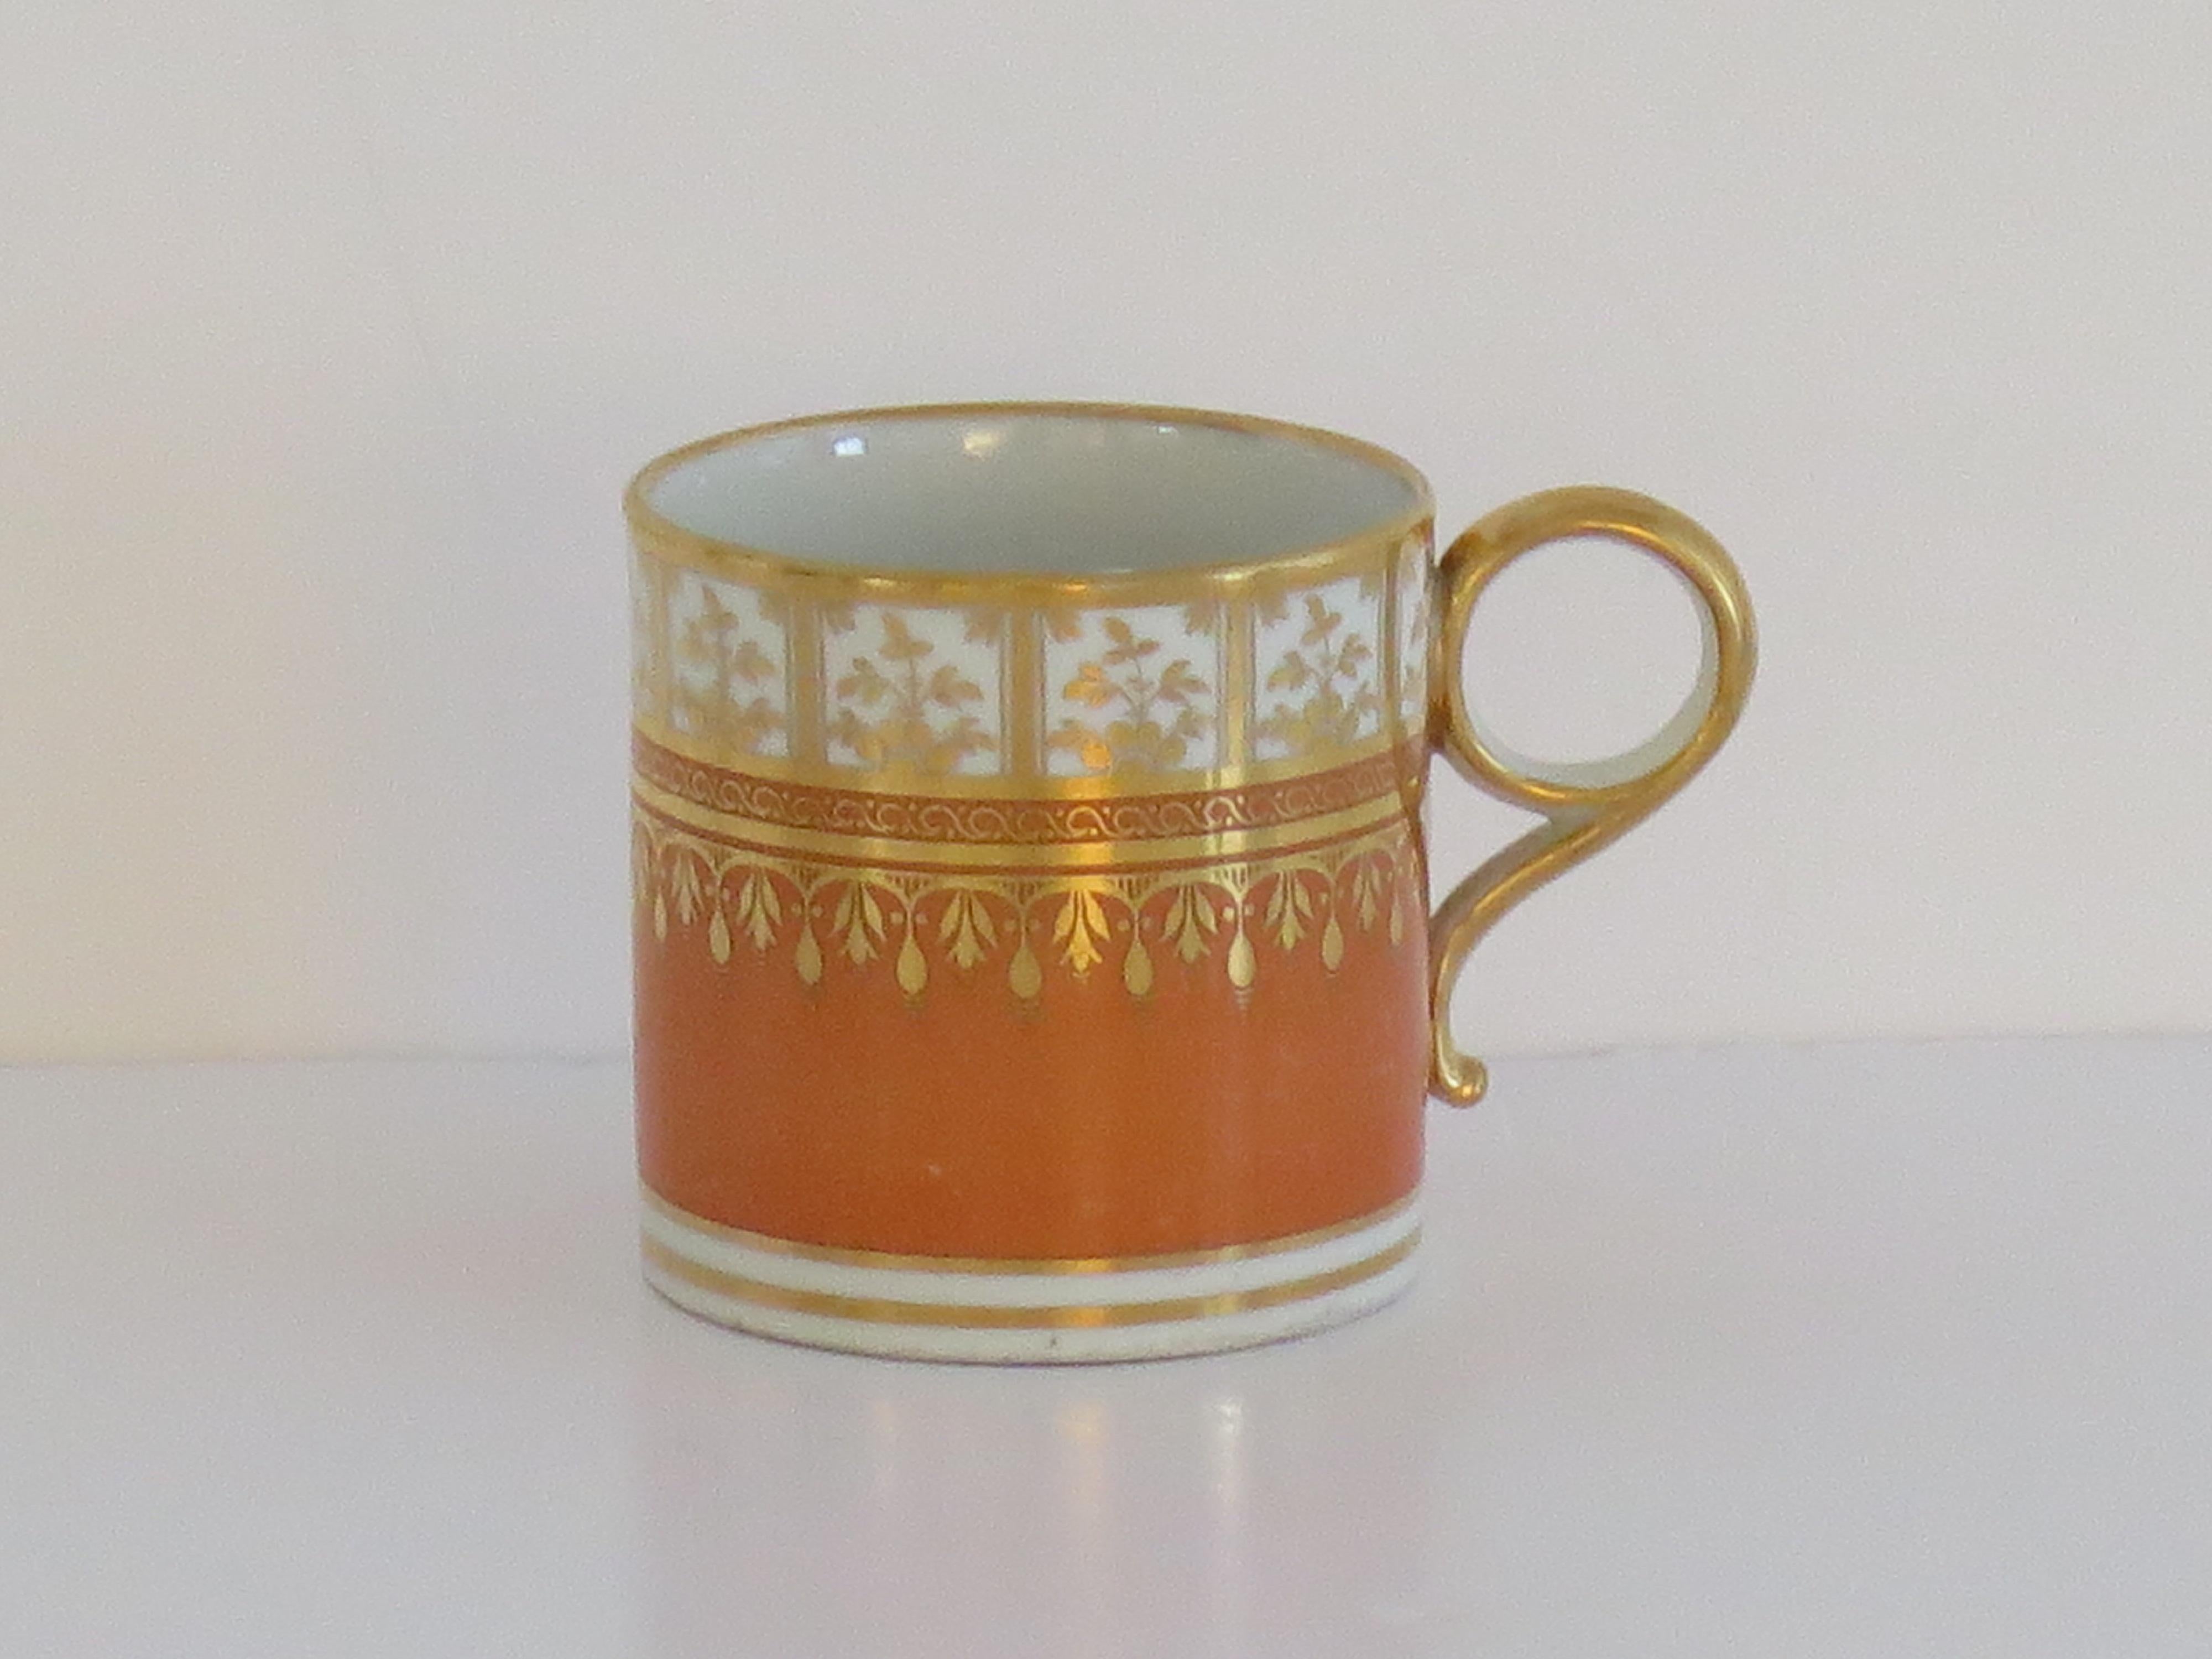 Très bonne boîte à café en porcelaine avec une poignée en anneau, décorée à la main d'un motif orange et doré par Worcester pendant la période Barr, entièrement marquée à la base et datant d'environ 1792-1807.

Il s'agit d'une boîte à café bien